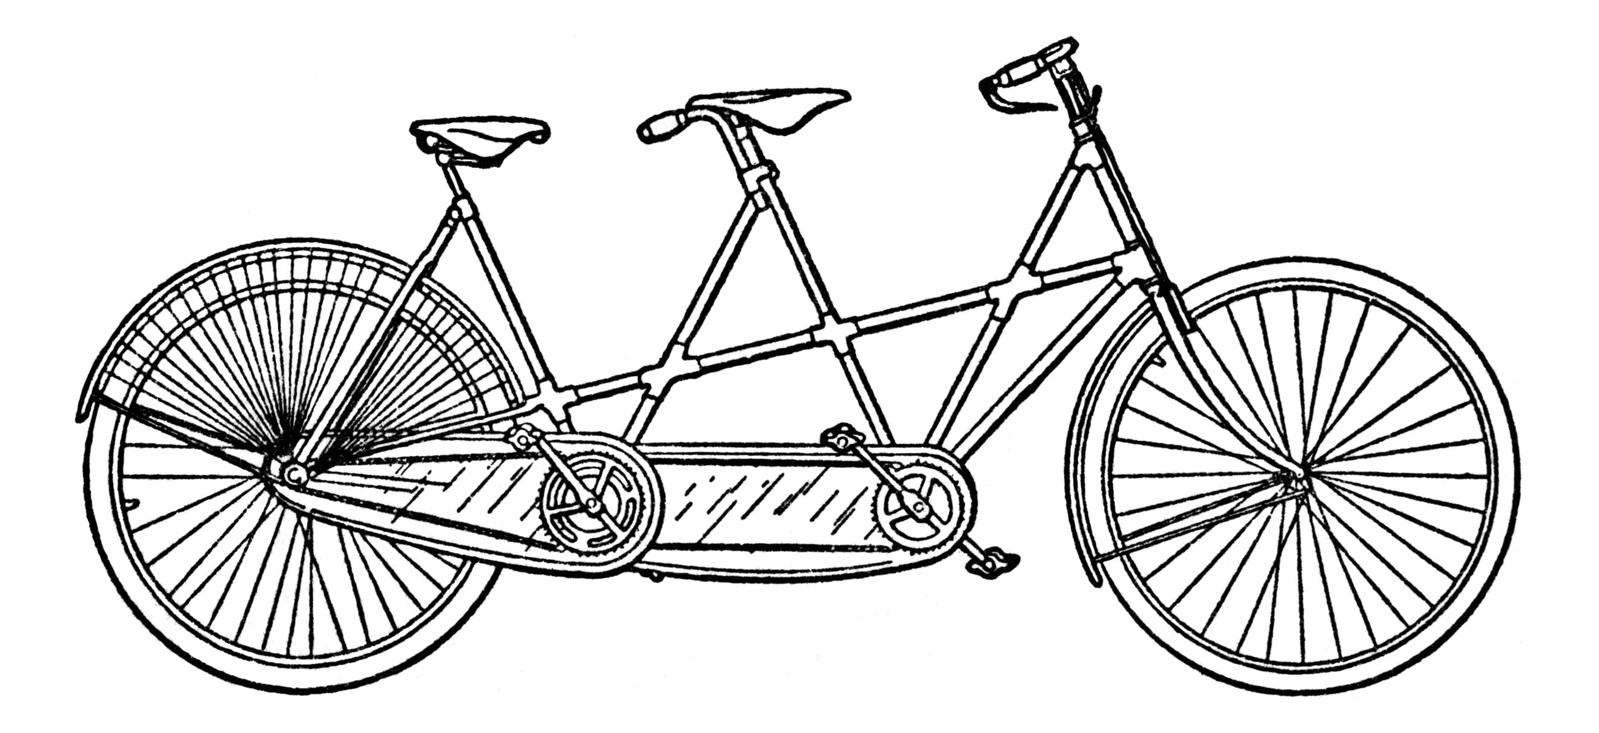 Трехместный велосипед рисунок